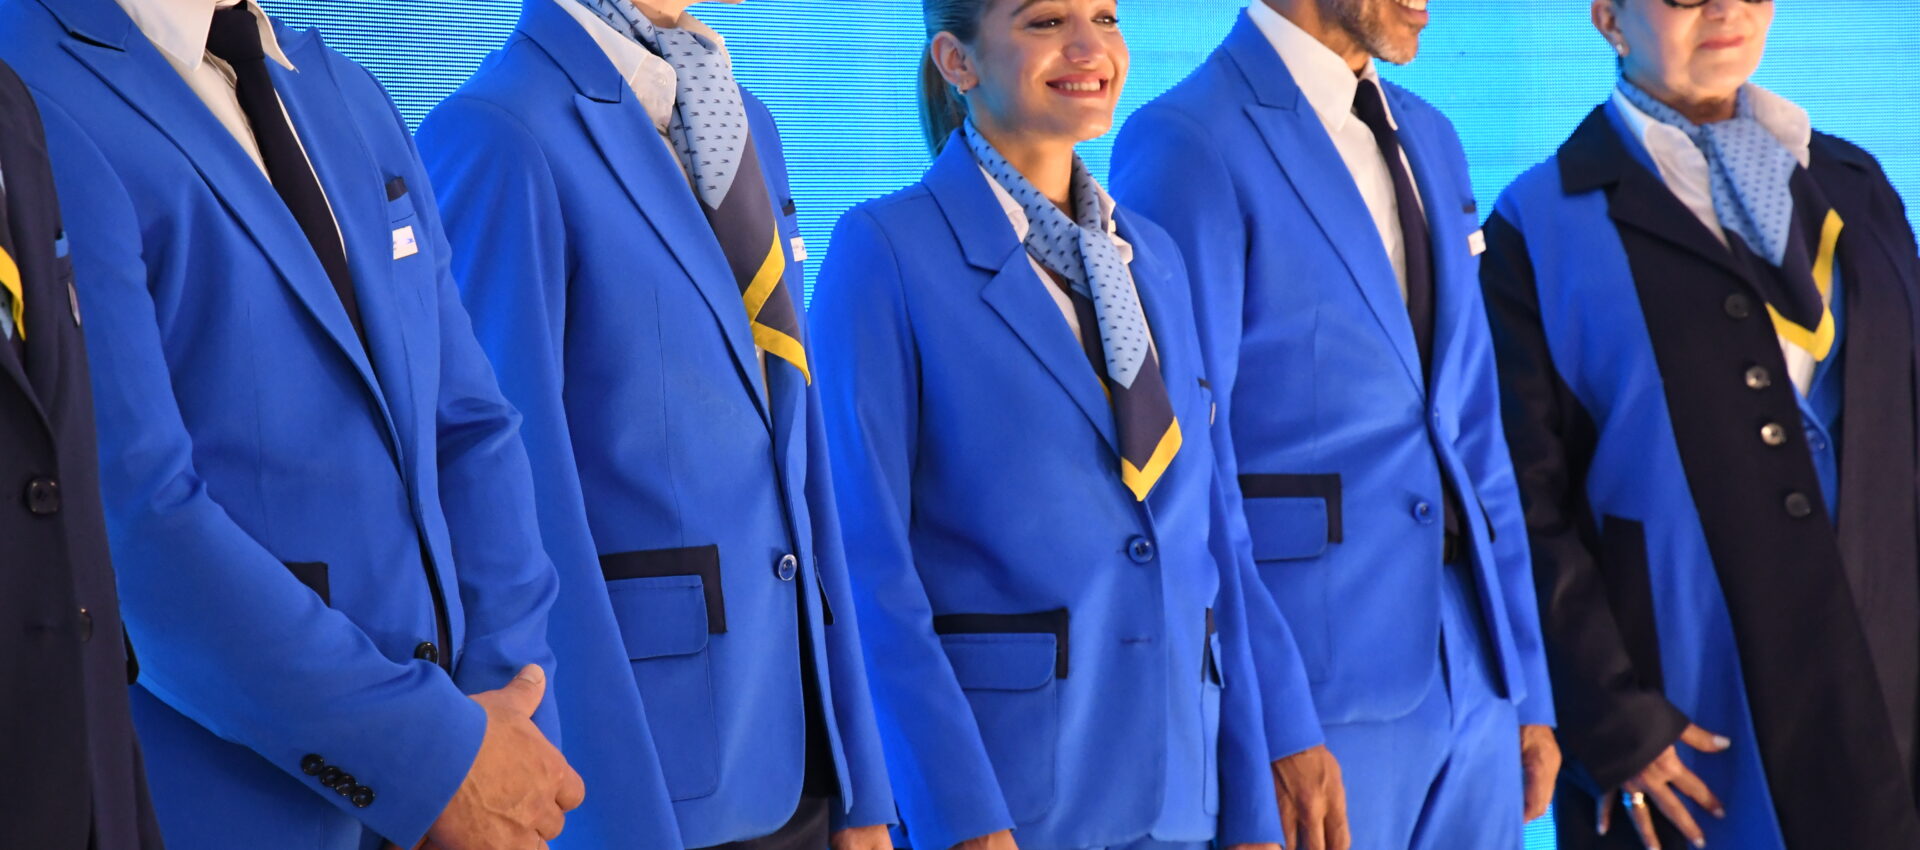 Aerolíneas Argentinas uniforme